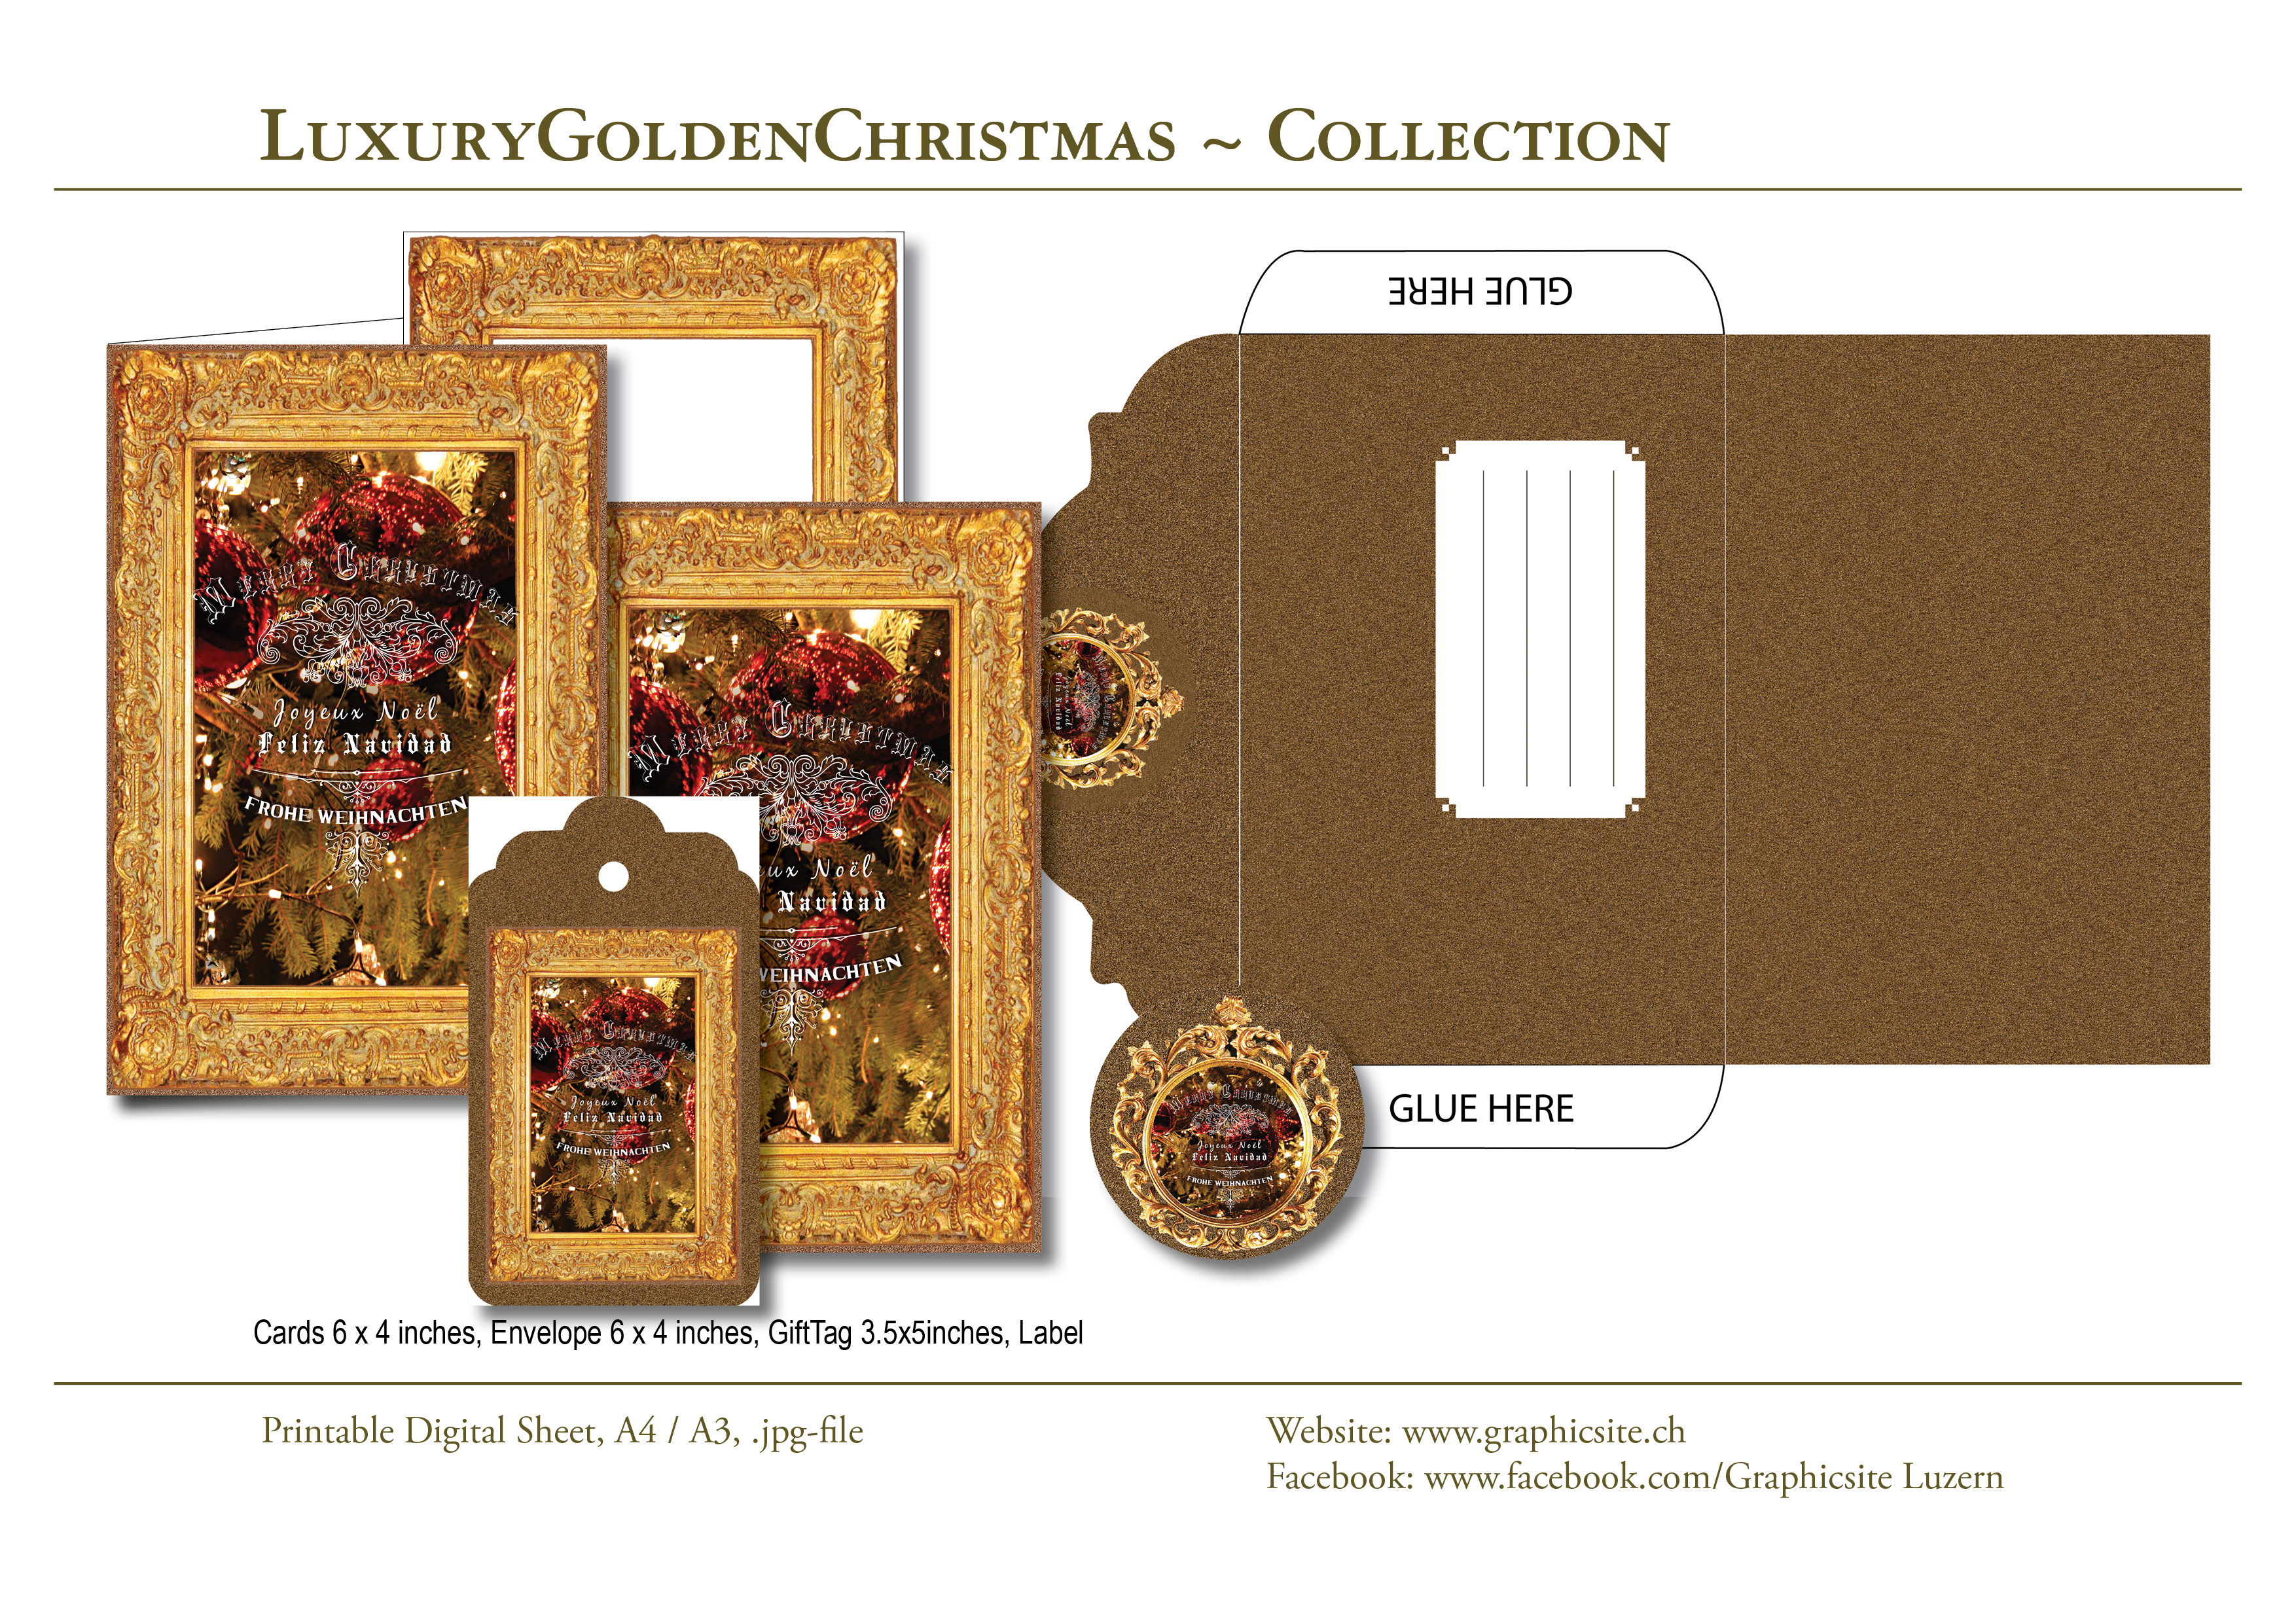 Karten selber drucken - Weihnachtskarten, Grusskarten, LuxuryGoldenChristmas - #weihnachtskarten, #karten, #selber, #drucken, #gestalten, #basteln, #luzern, #schweiz